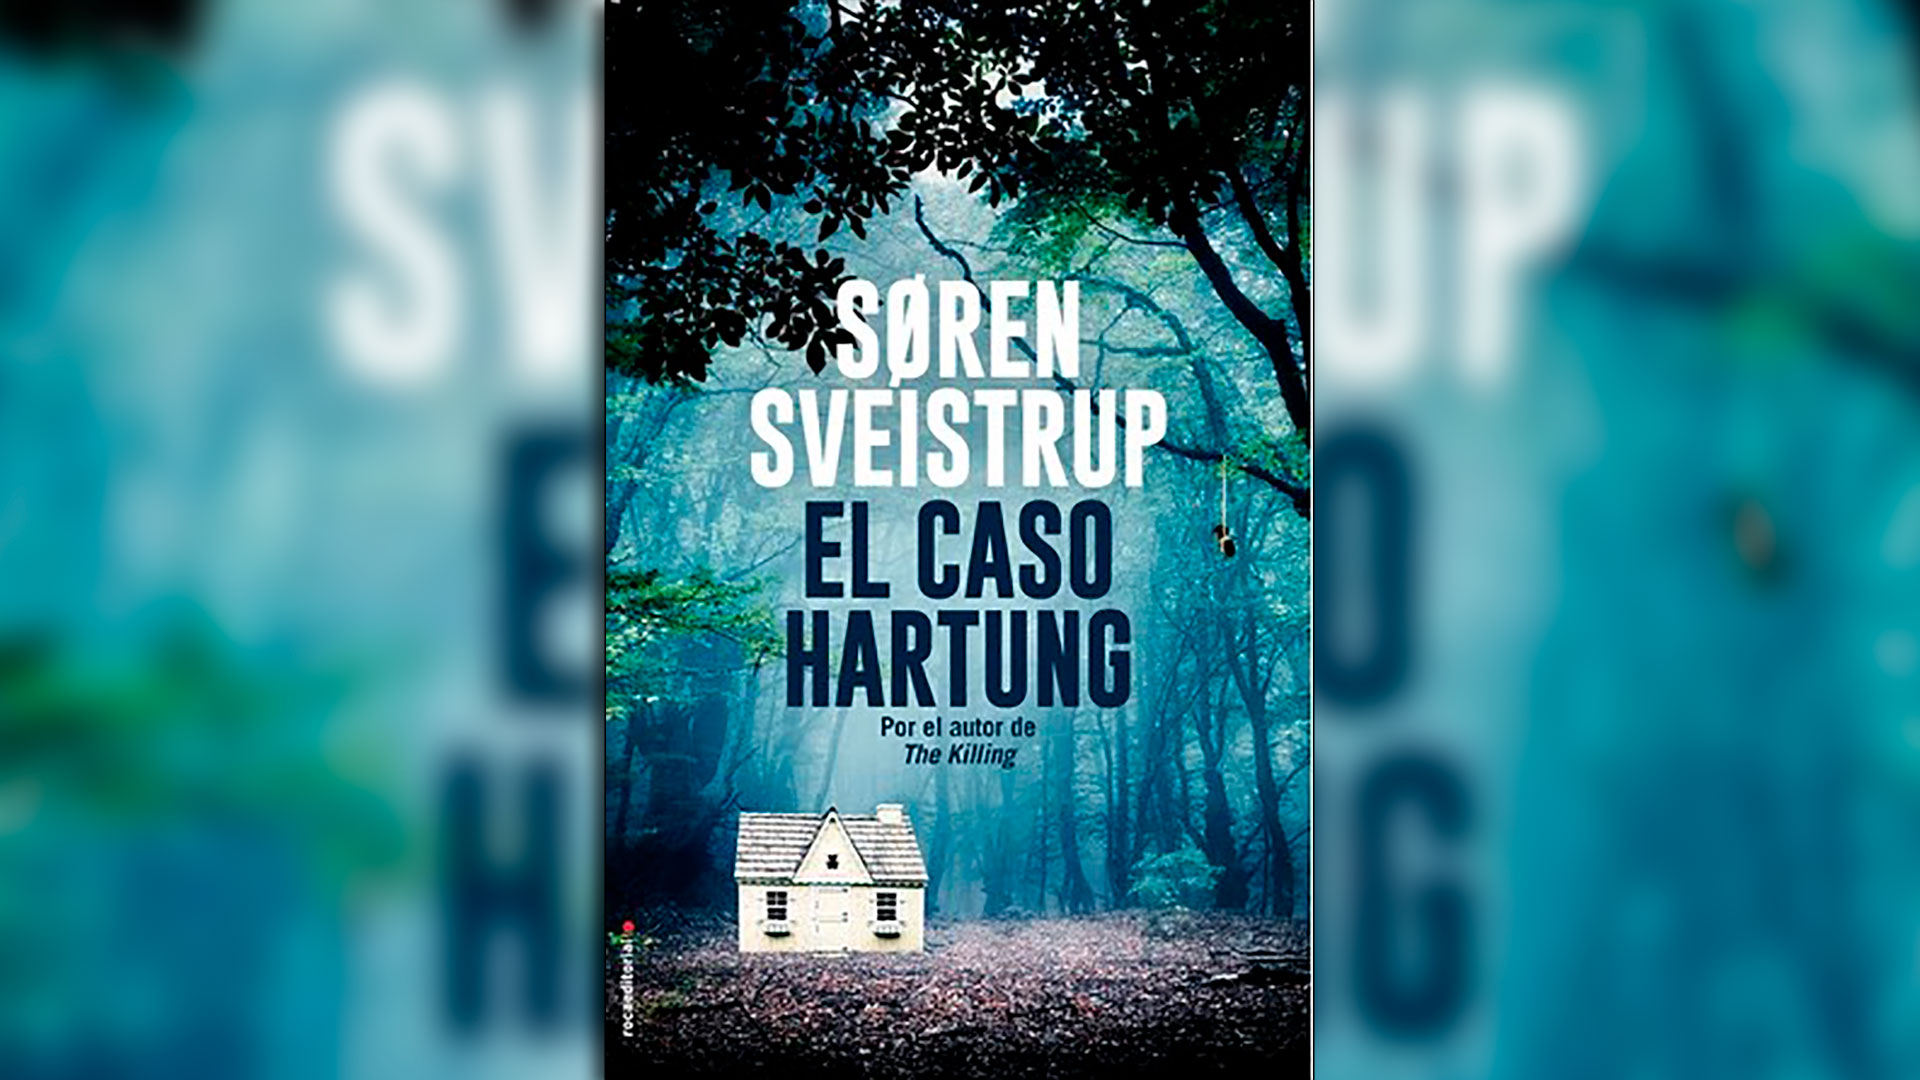 “El caso Hartung”, Søren Sveistrup.